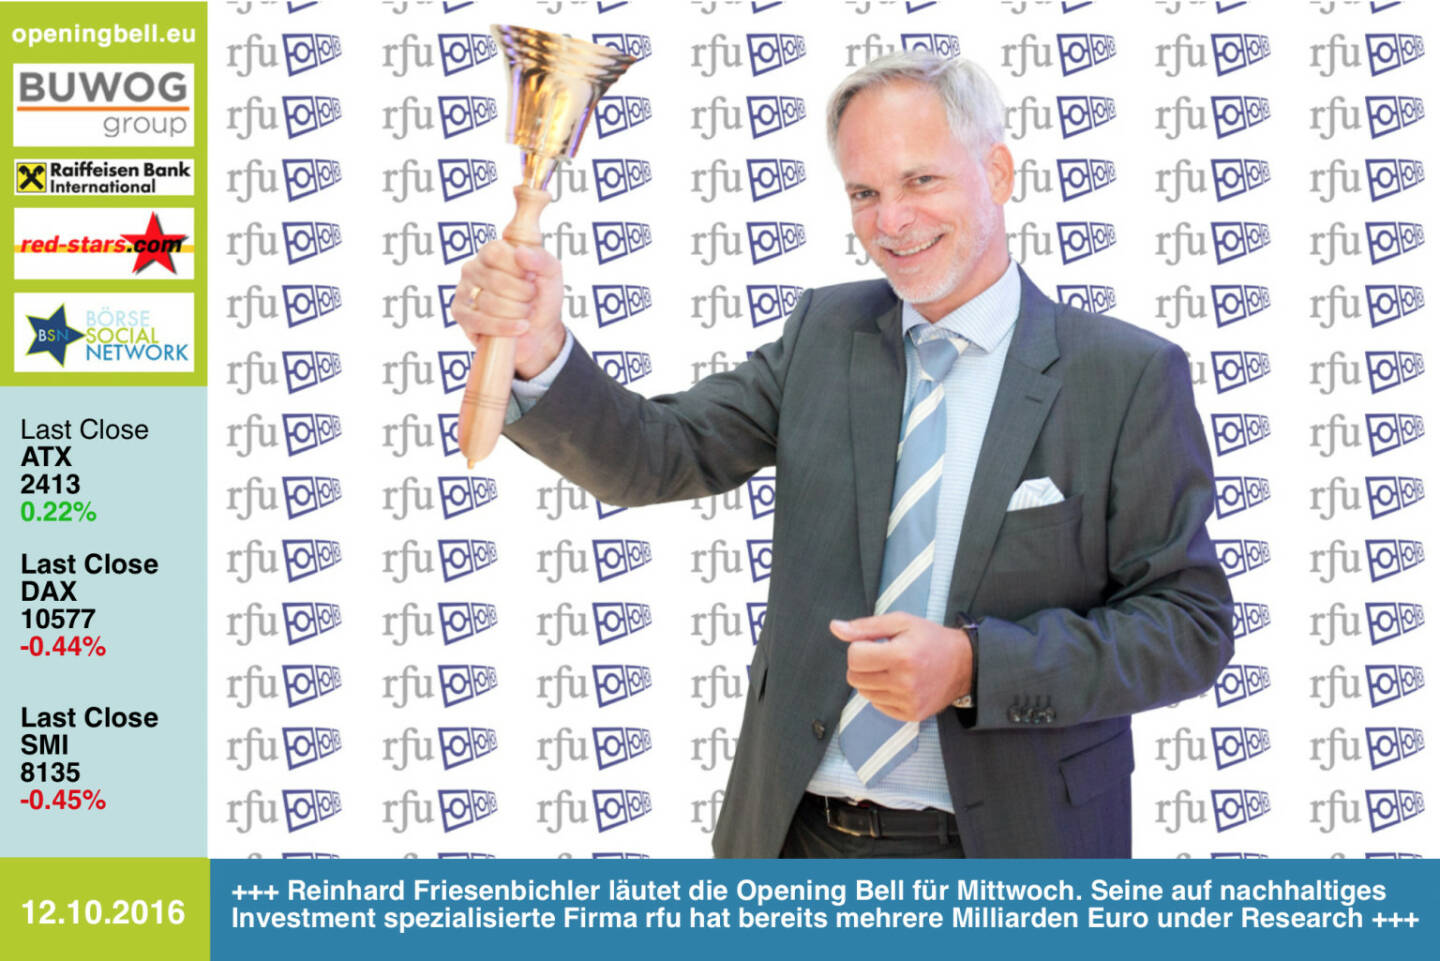 #openingbell am 12.10.: Reinhard Friesenbichler läutet die Opening Bell für Mittwoch. Seine auf nachhaltiges Investment spezialisierte Firma rfu hat bereits mehrere Milliarden Euro under Research http://www.rfu.at http://www.openingbell.eu